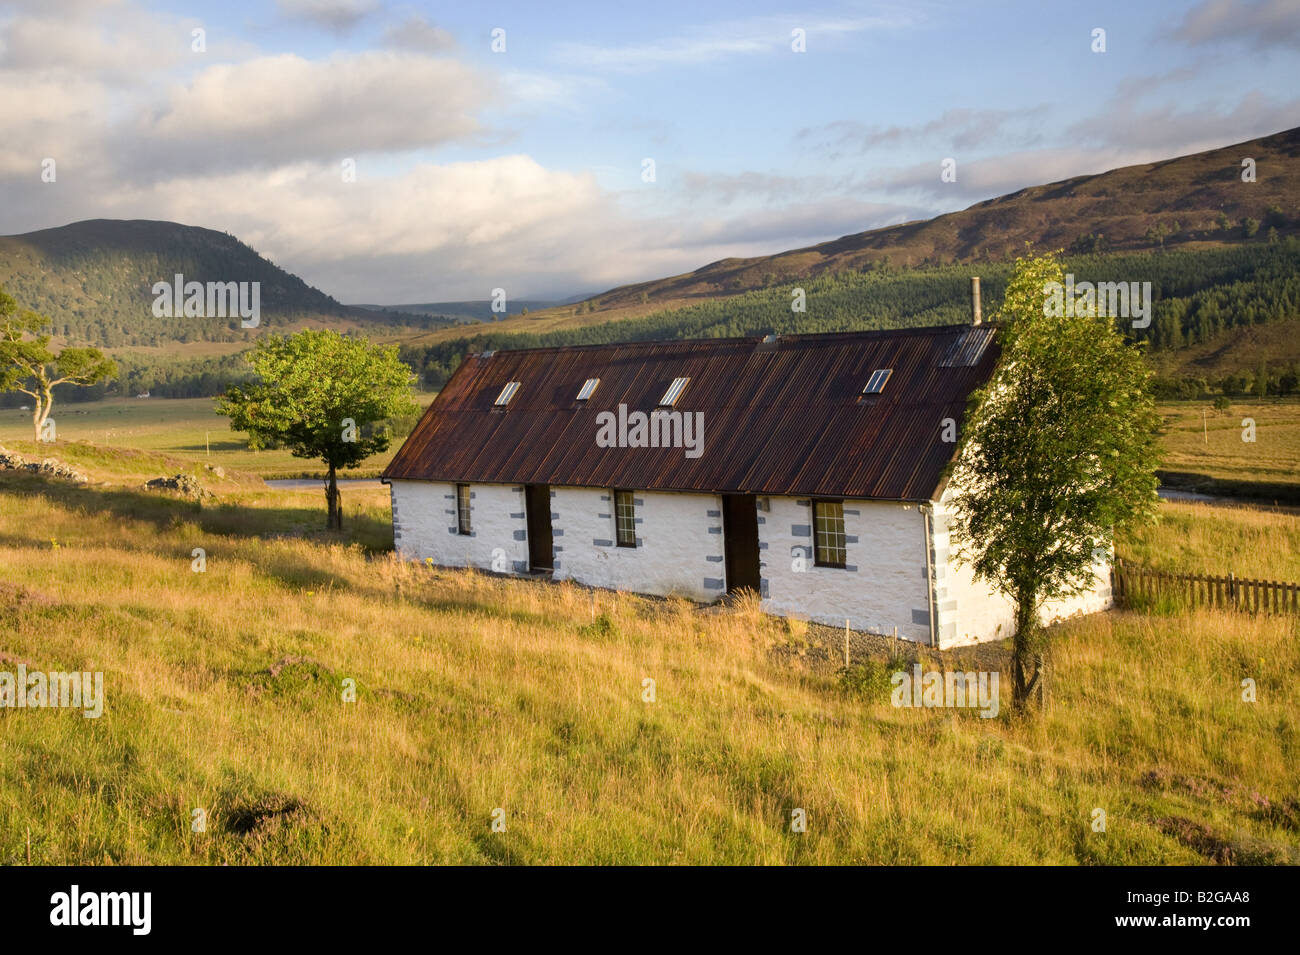 Dalgowan bothy Lowland abgelegenes, einstöckiges Haus; Scottish Keepers Country Cottage, Braemar, Aberdeenshire, Cairngorms National Park, Schottland Großbritannien Stockfoto